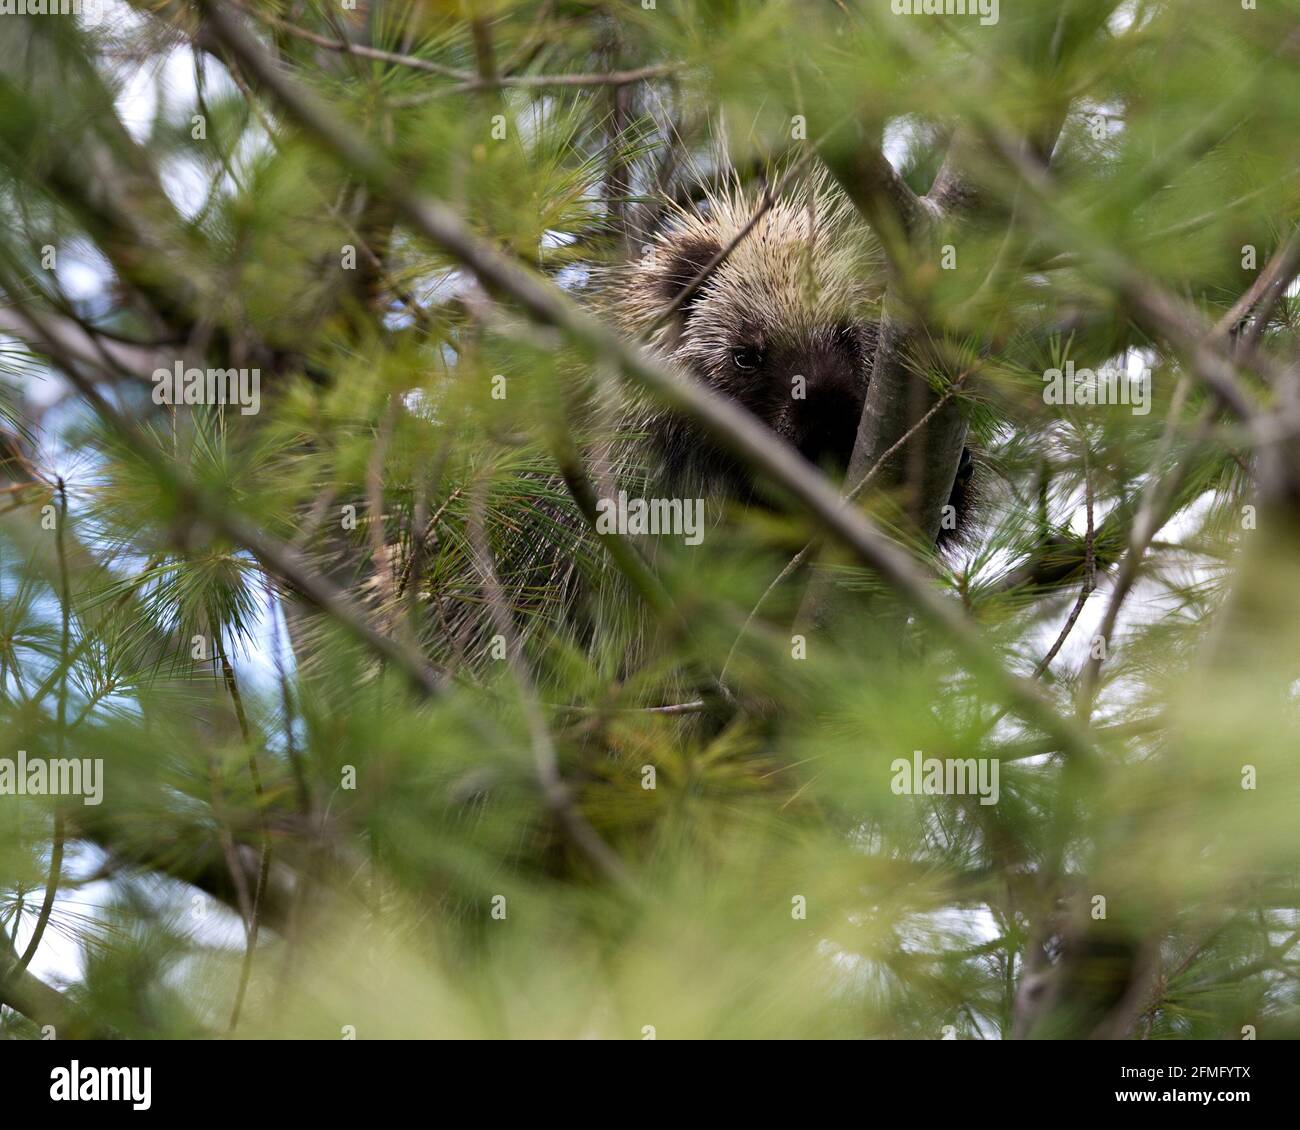 Porcupine se cachant dans un arbre, montrant sa tête, manteau de épines acérées, des quills, au printemps, avec des aiguilles de pin au premier plan et en arrière-plan Banque D'Images